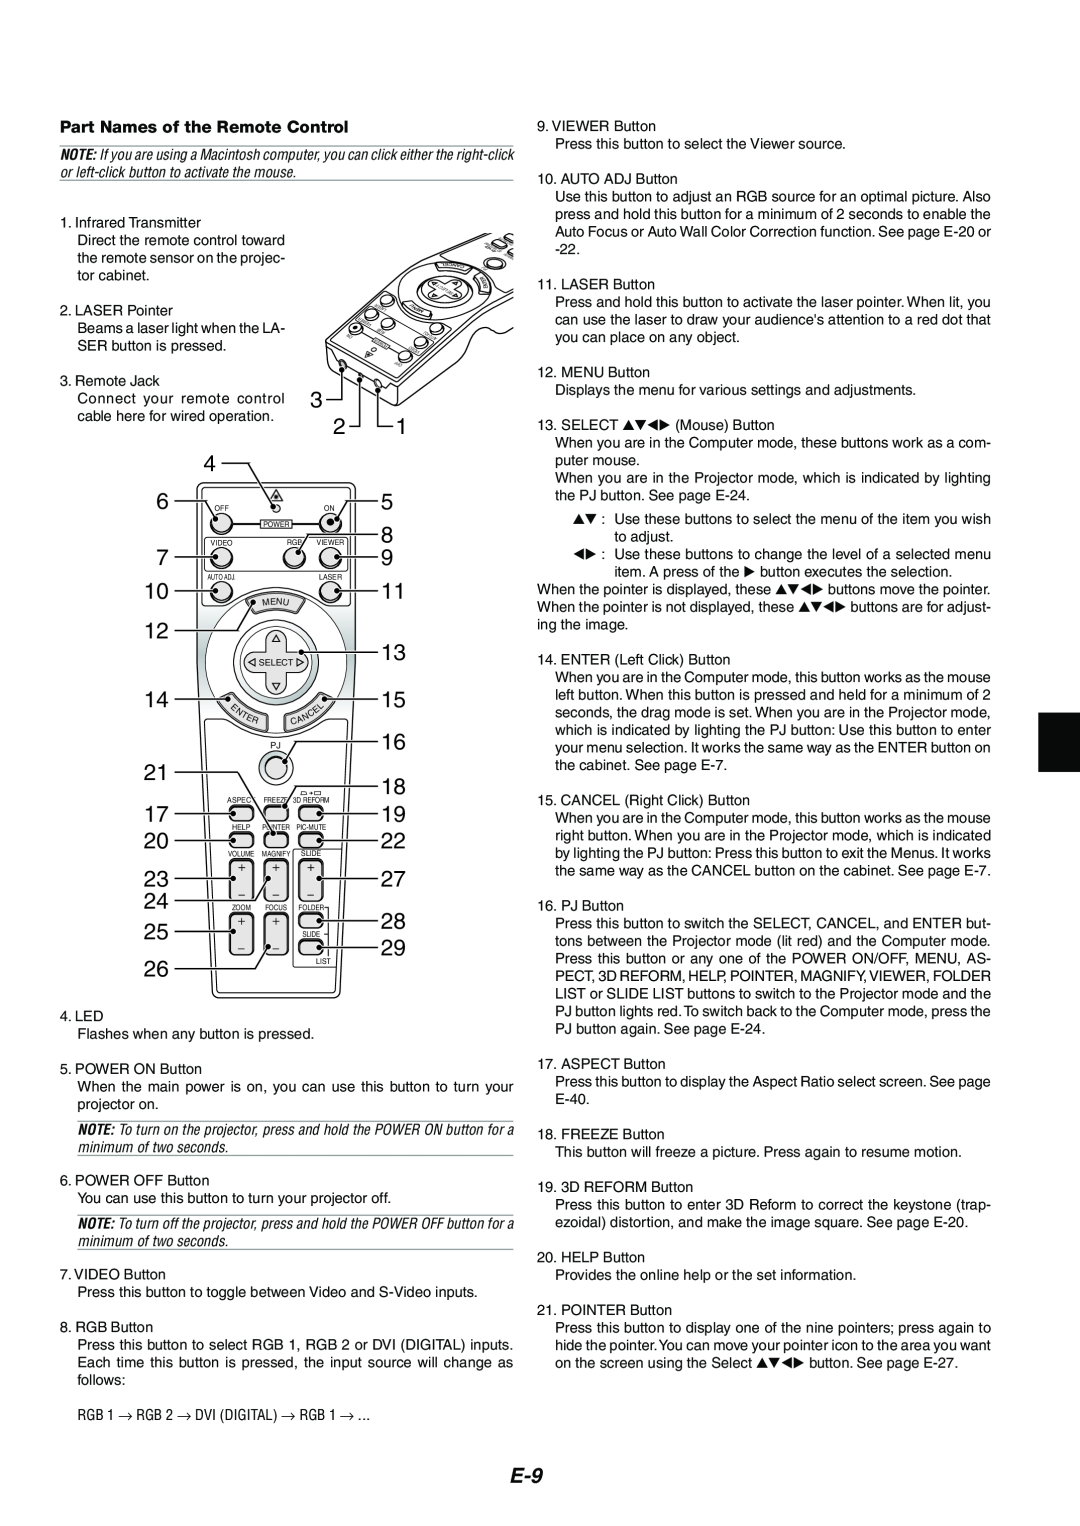 Kensington MT1065, MT1075 user manual Part Names of the Remote Control 